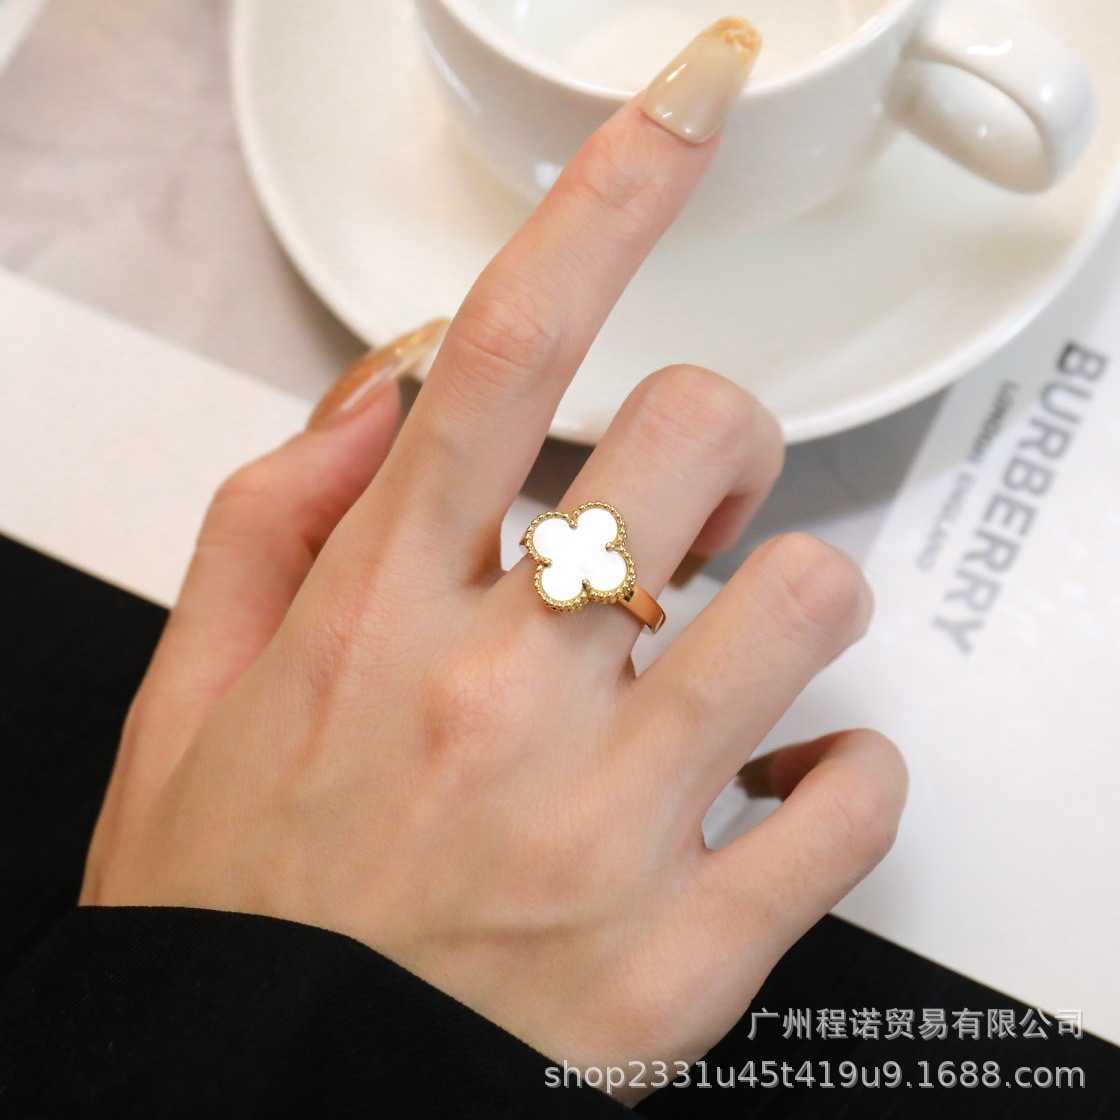 Goedkope prijs en hoogwaardige sieraden ringen goud 18K hoge ring natuurlijk wit zwart met gemeenschappelijk vnain